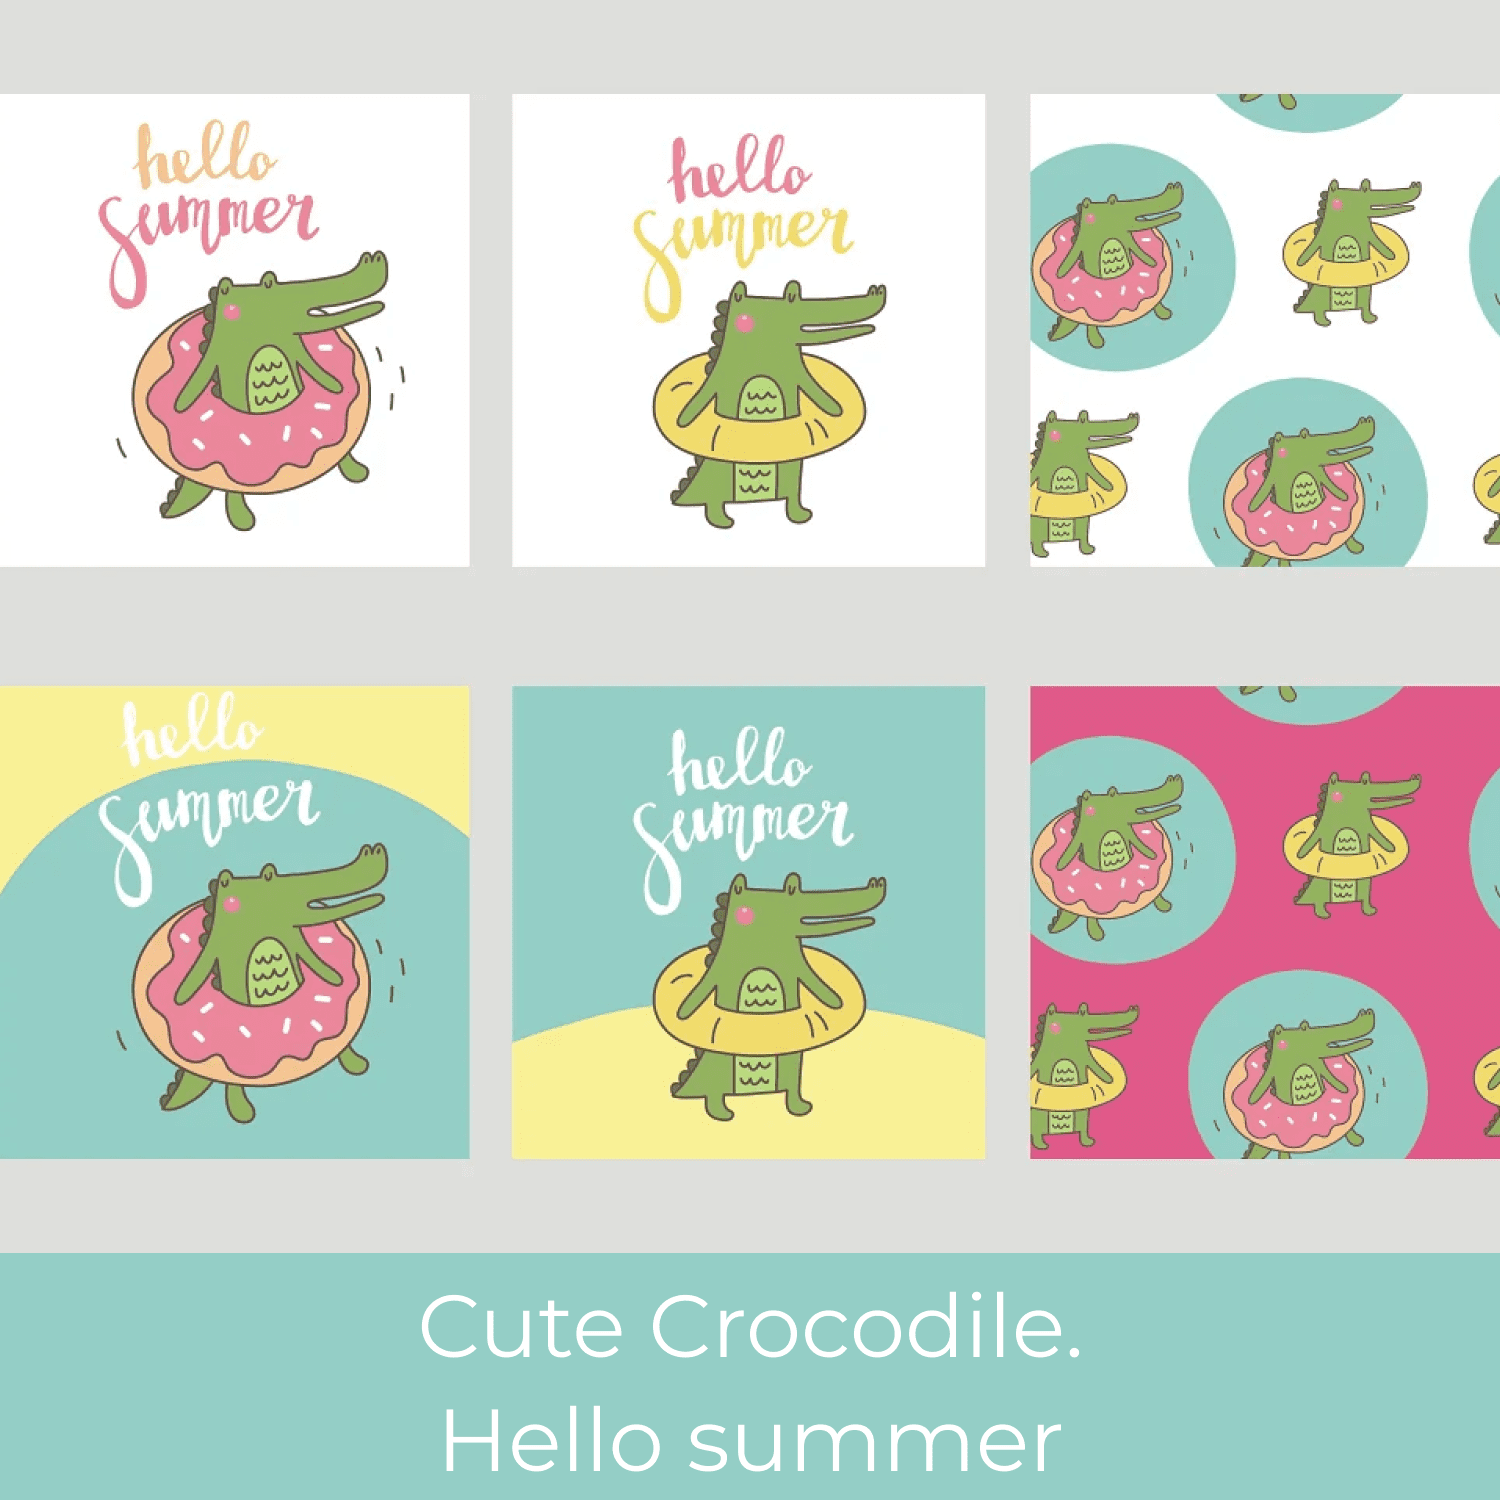 Cute Crocodile. Hello summer cover.